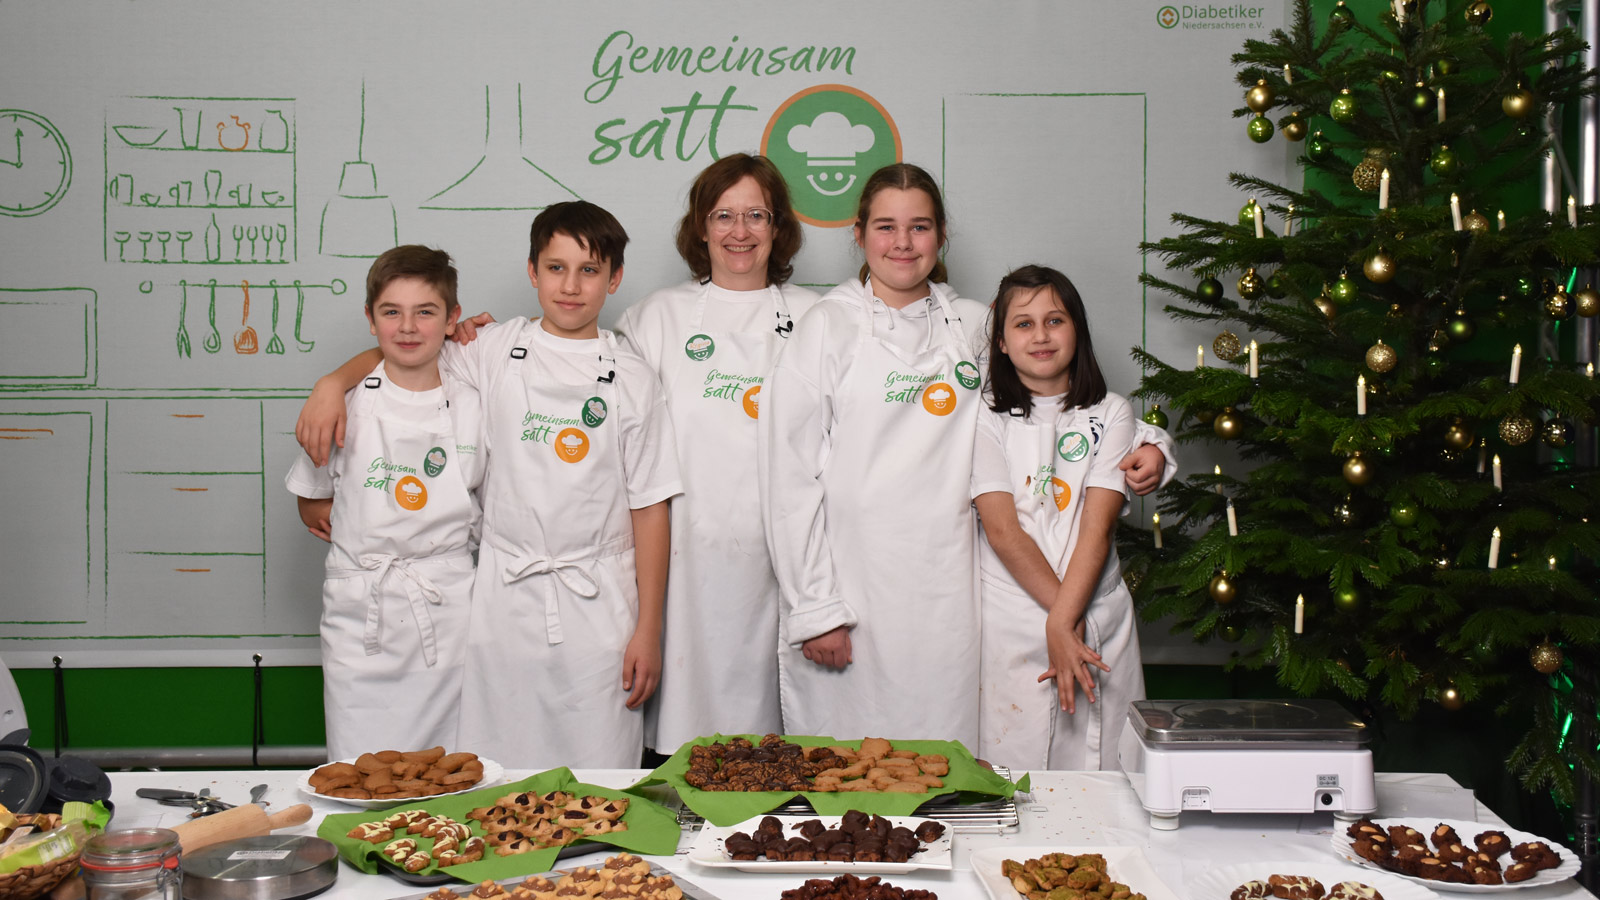 Die ganze Gruppe (4 Kinder + Regina Kröger) steht stolz vor verschiedenen Tellern mit Keksen